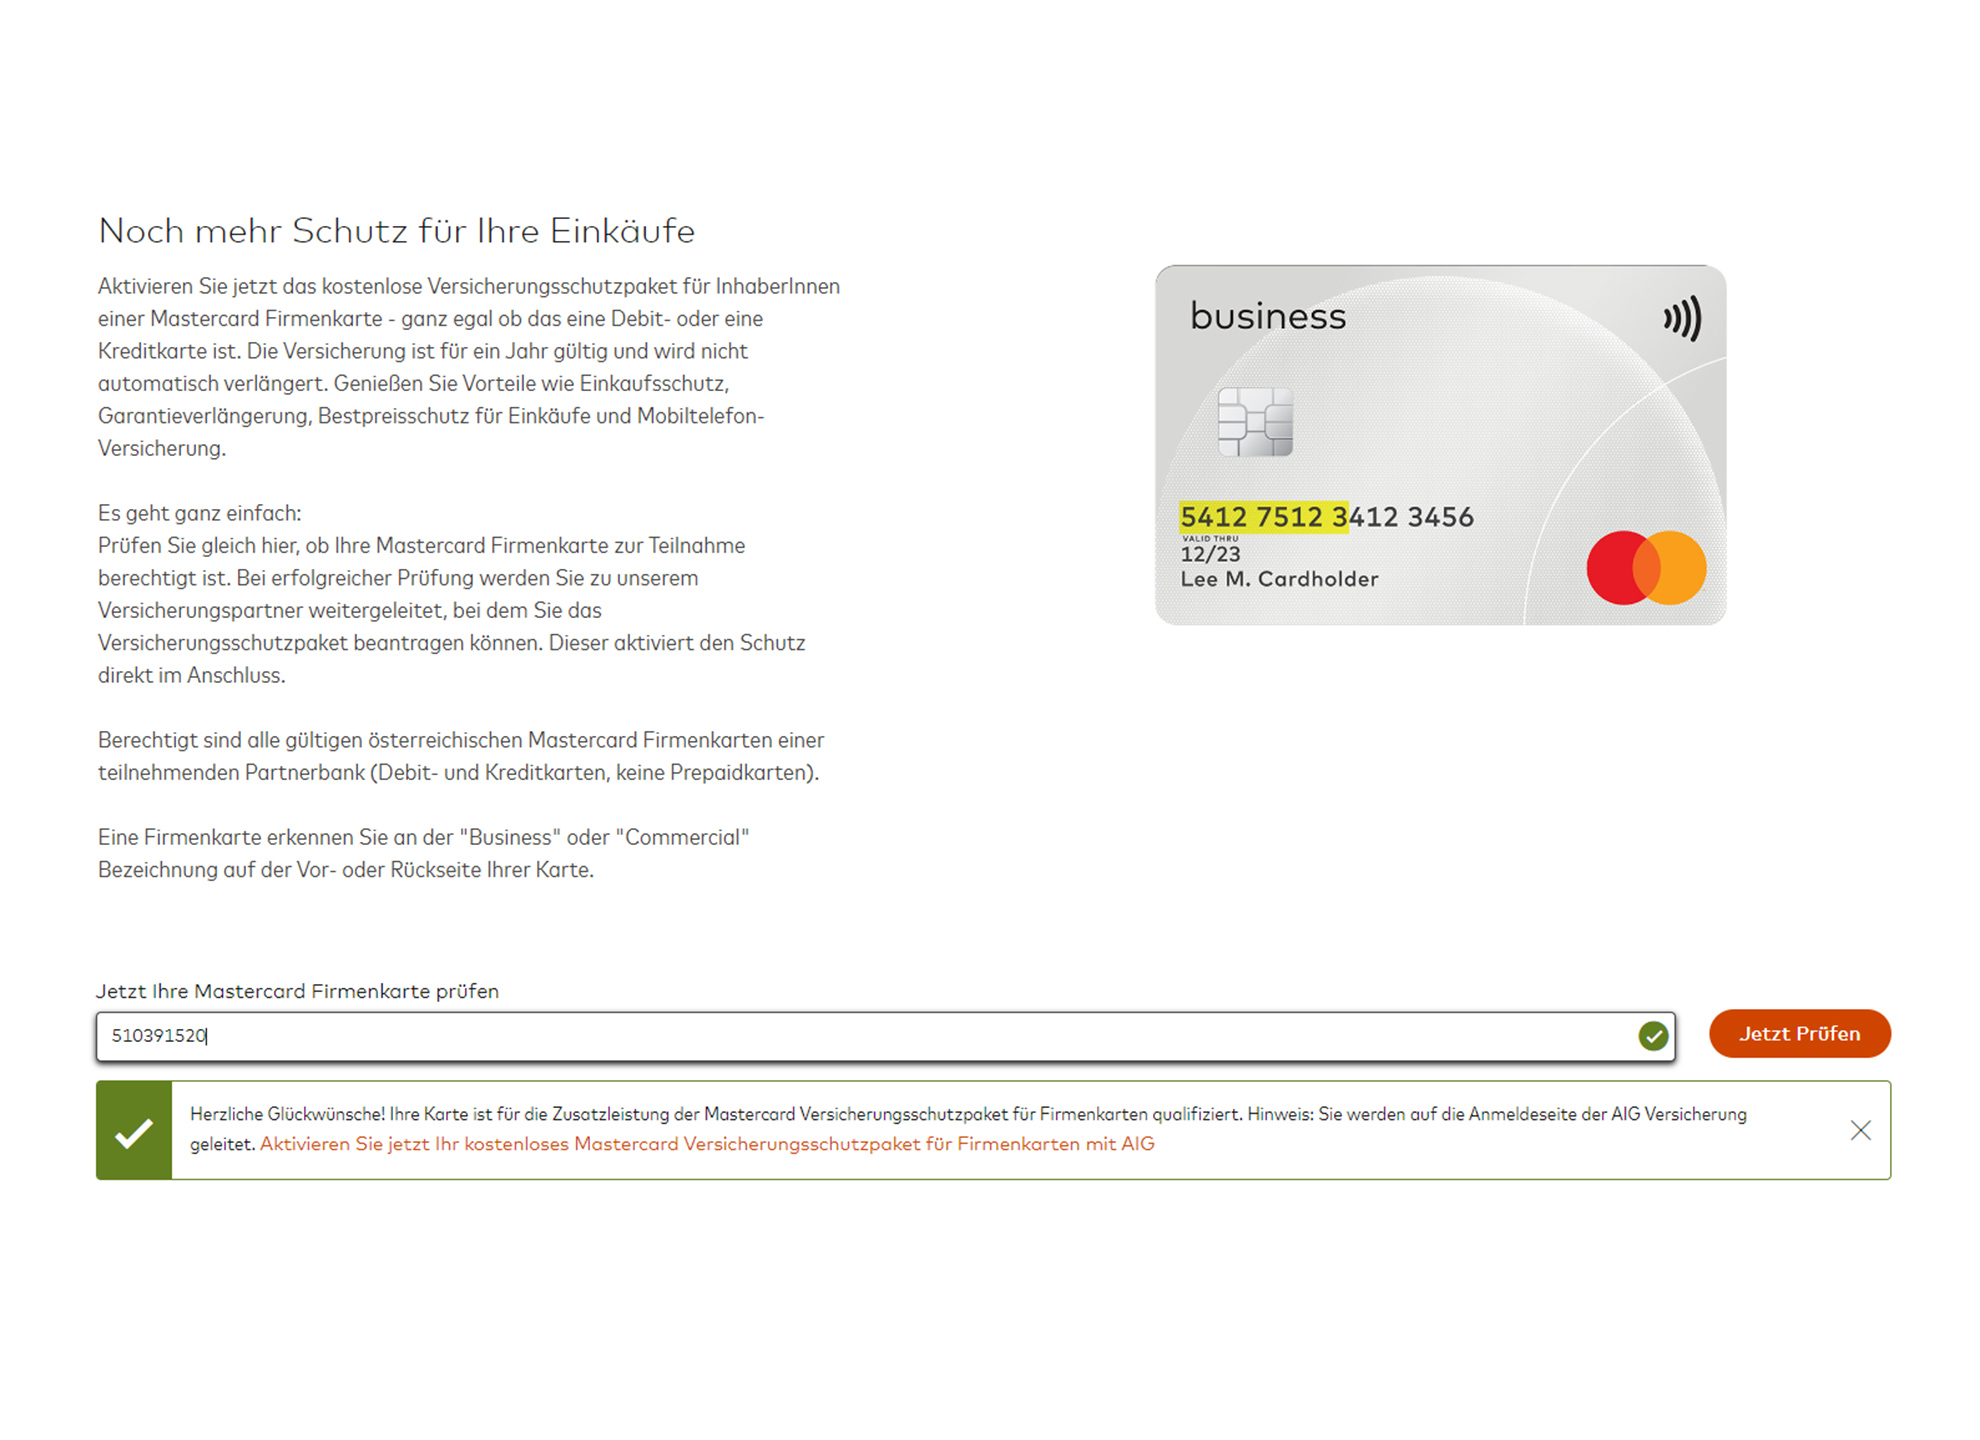 Anleitung für die Aktivierung von Mastercard Versicherungsschutzpaket für Firmenkunden